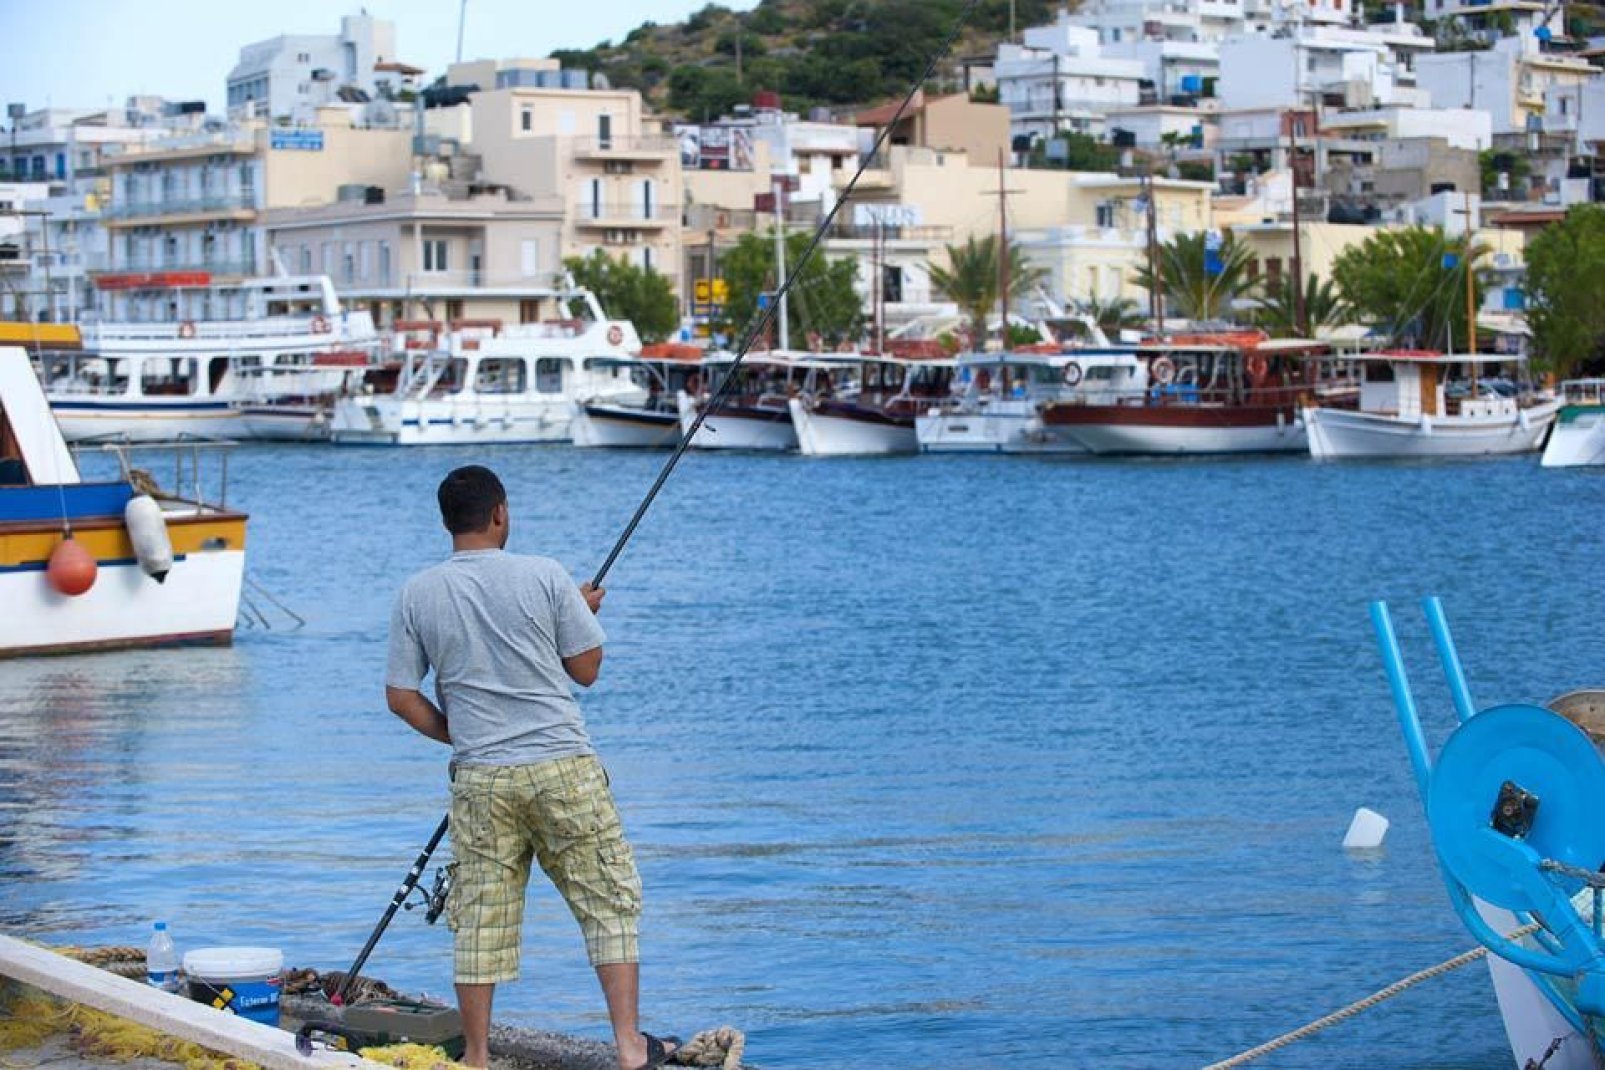 Le petit village a conservé son activité traditionnelle et ses bateaux de pêche colorés au port.